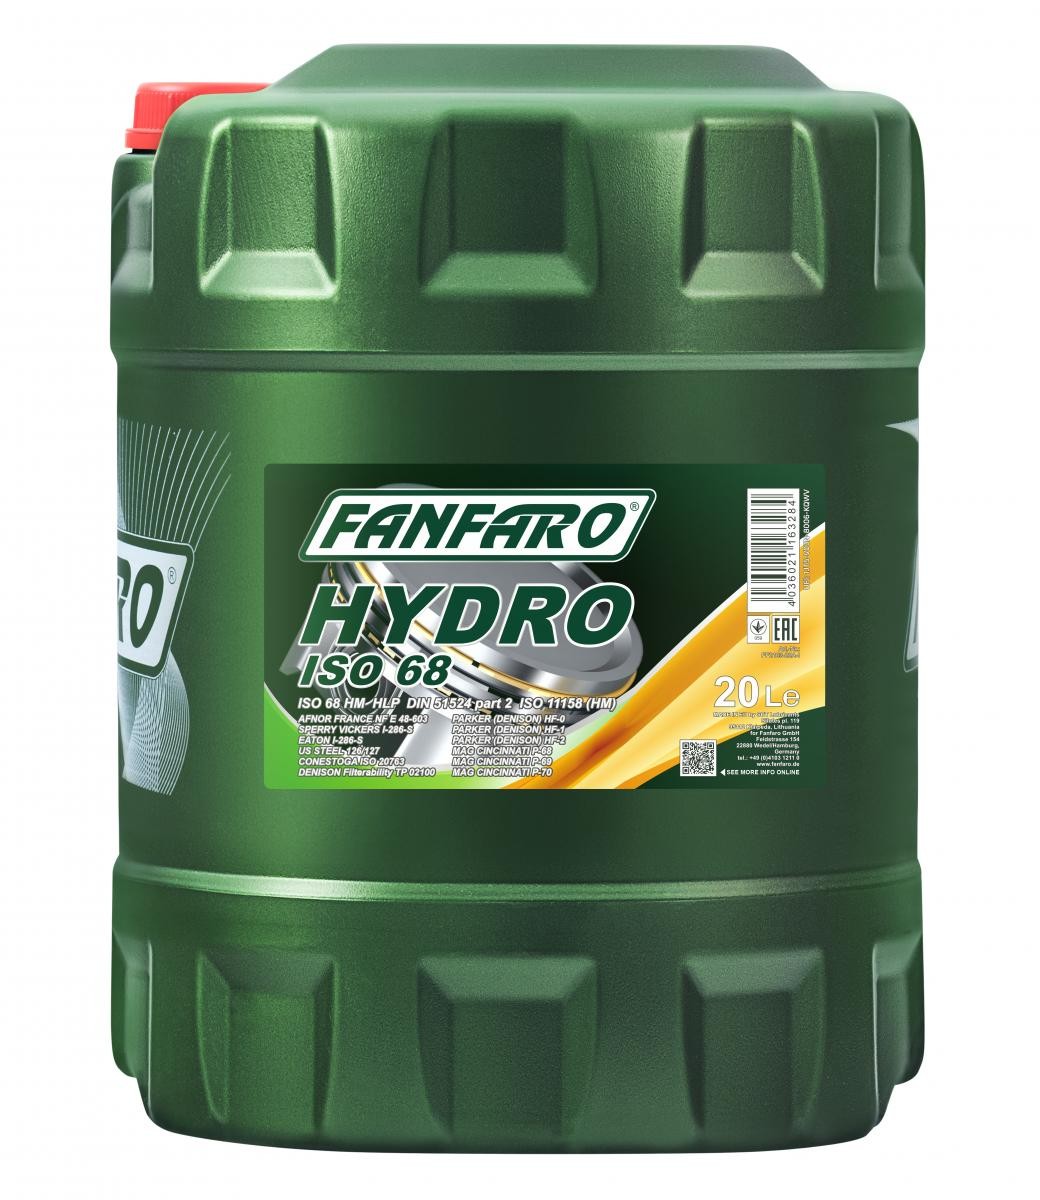 FANFARO Hydro, ISO 68 FF2103-20 Hydraulic Oil Capacity: 20l